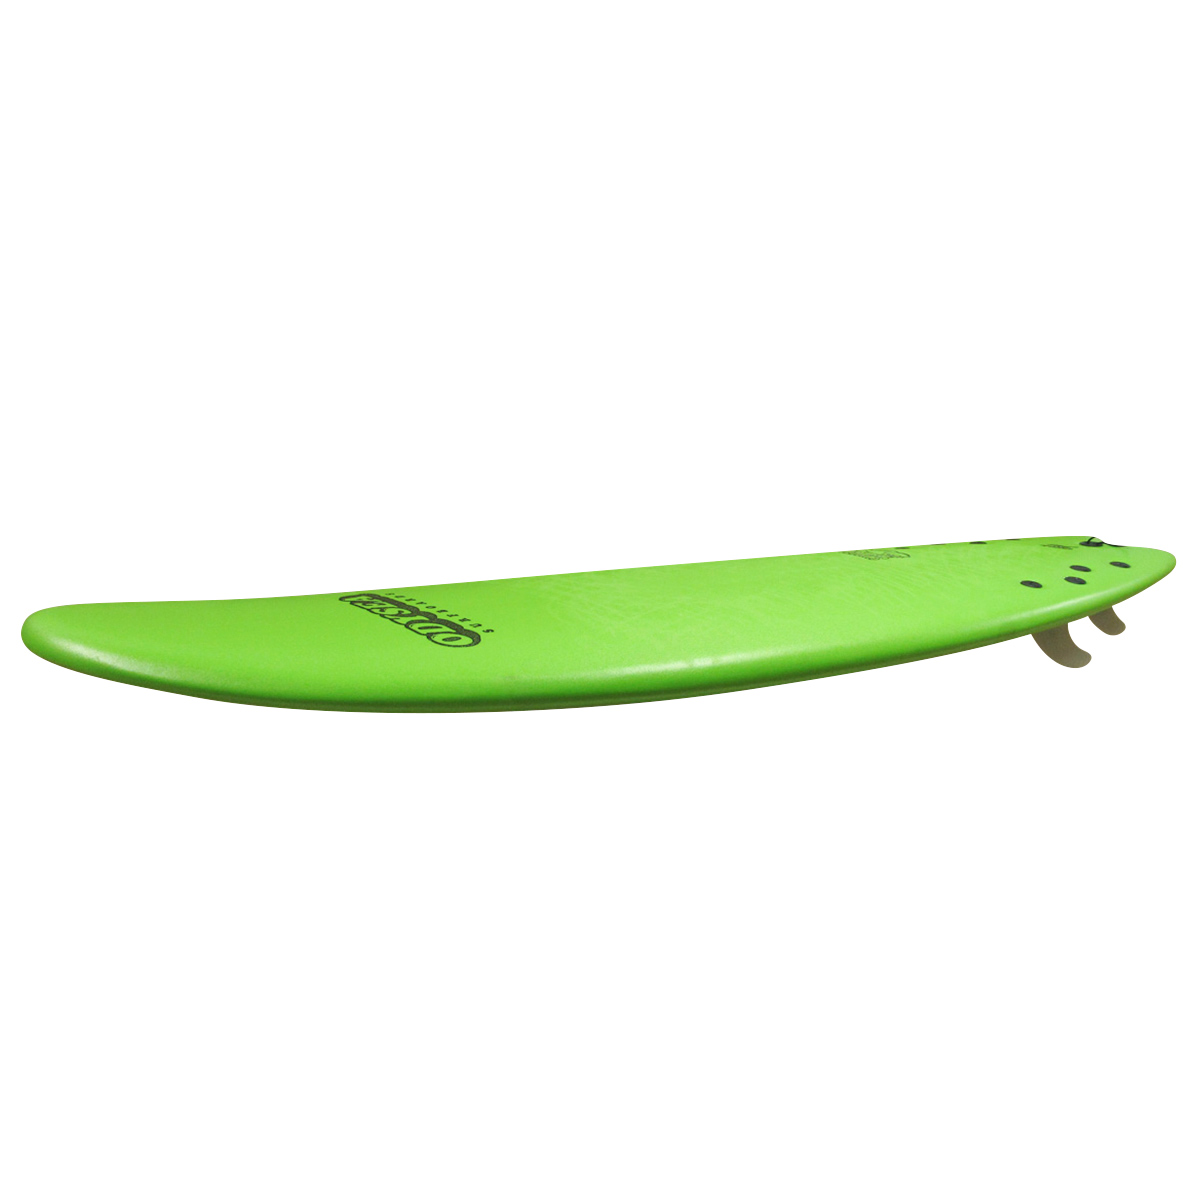 CATCH SURF / Odysea Skipper Fish 6`6 